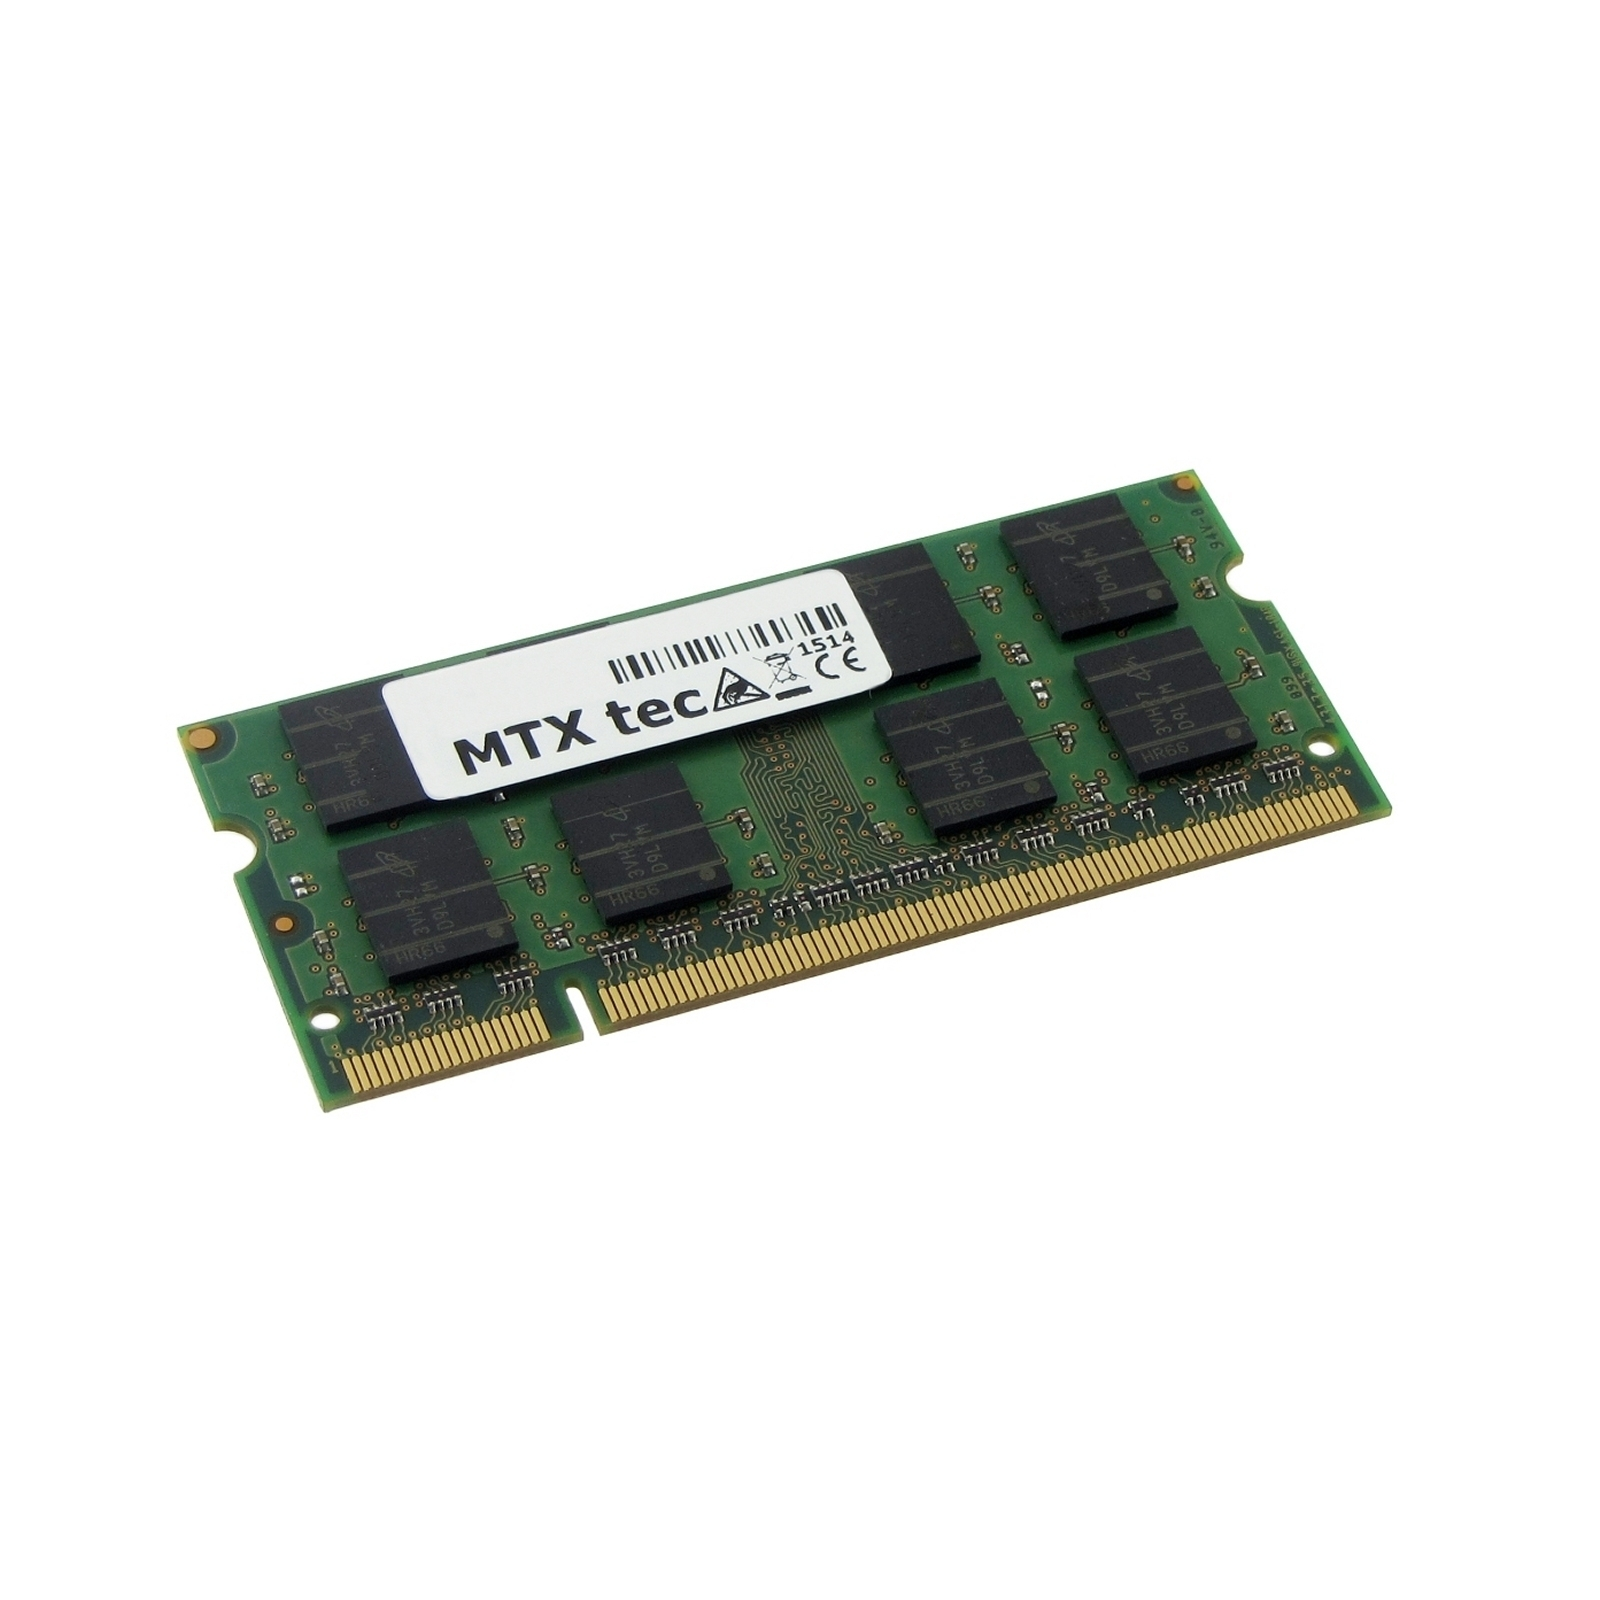 Arbeitsspeicher GB 1 MTXTEC für DDR RAM GB ASUS A3500 Notebook-Speicher 1